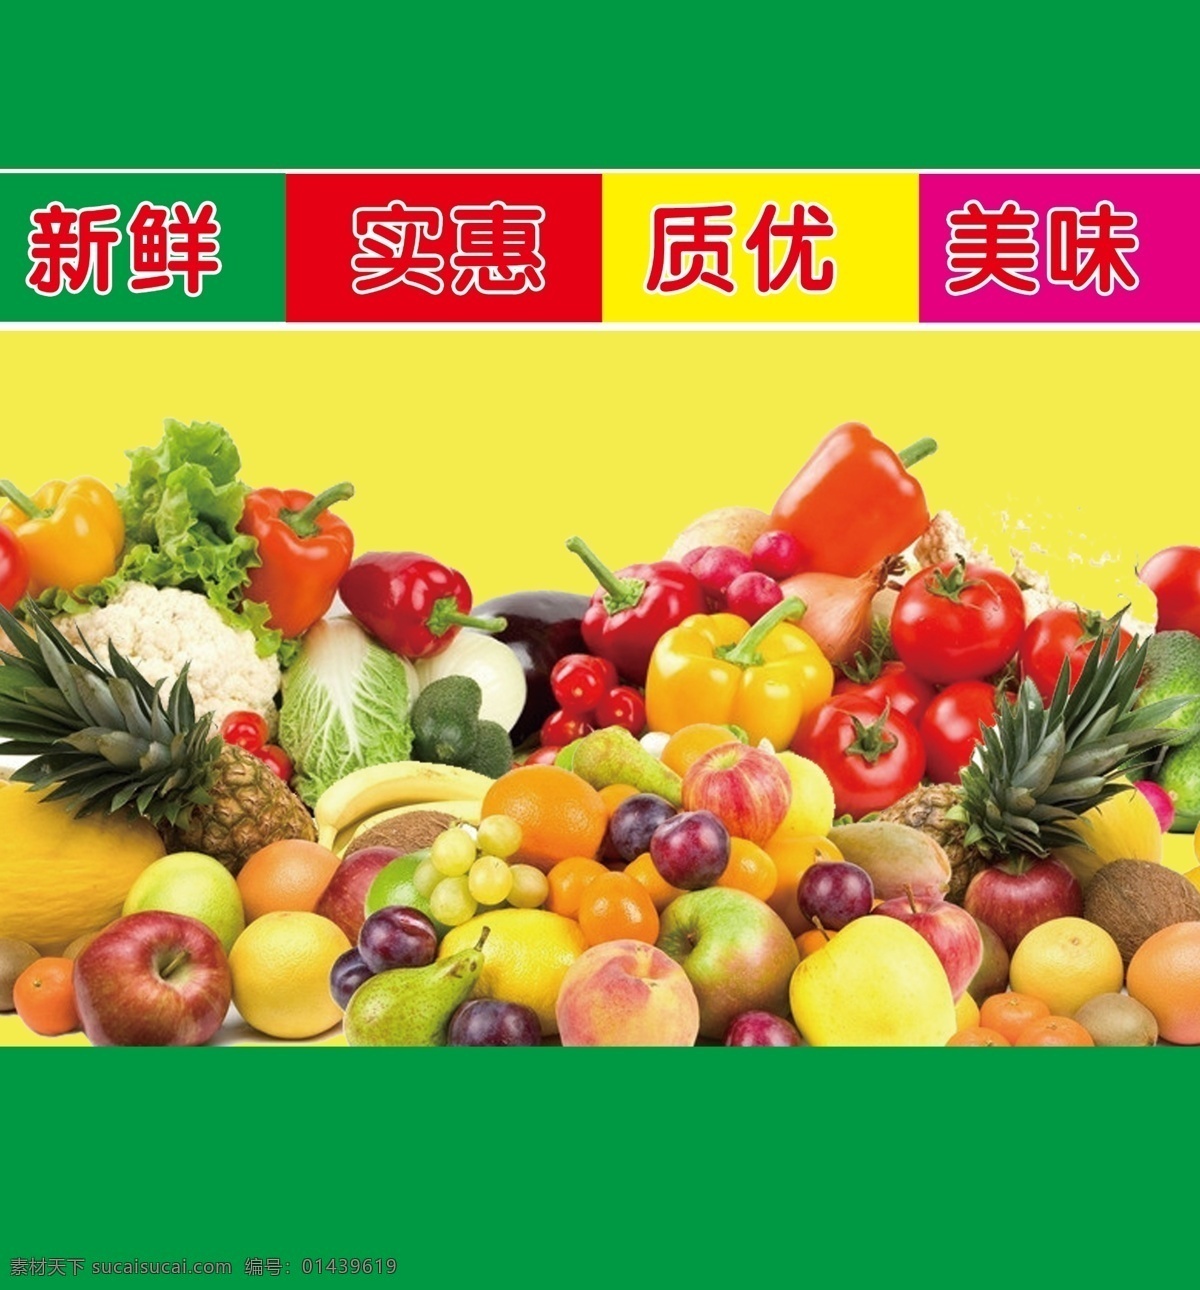 超市 蔬菜水果 蔬菜 水果 新鲜 实惠 质优 美味 招贴设计